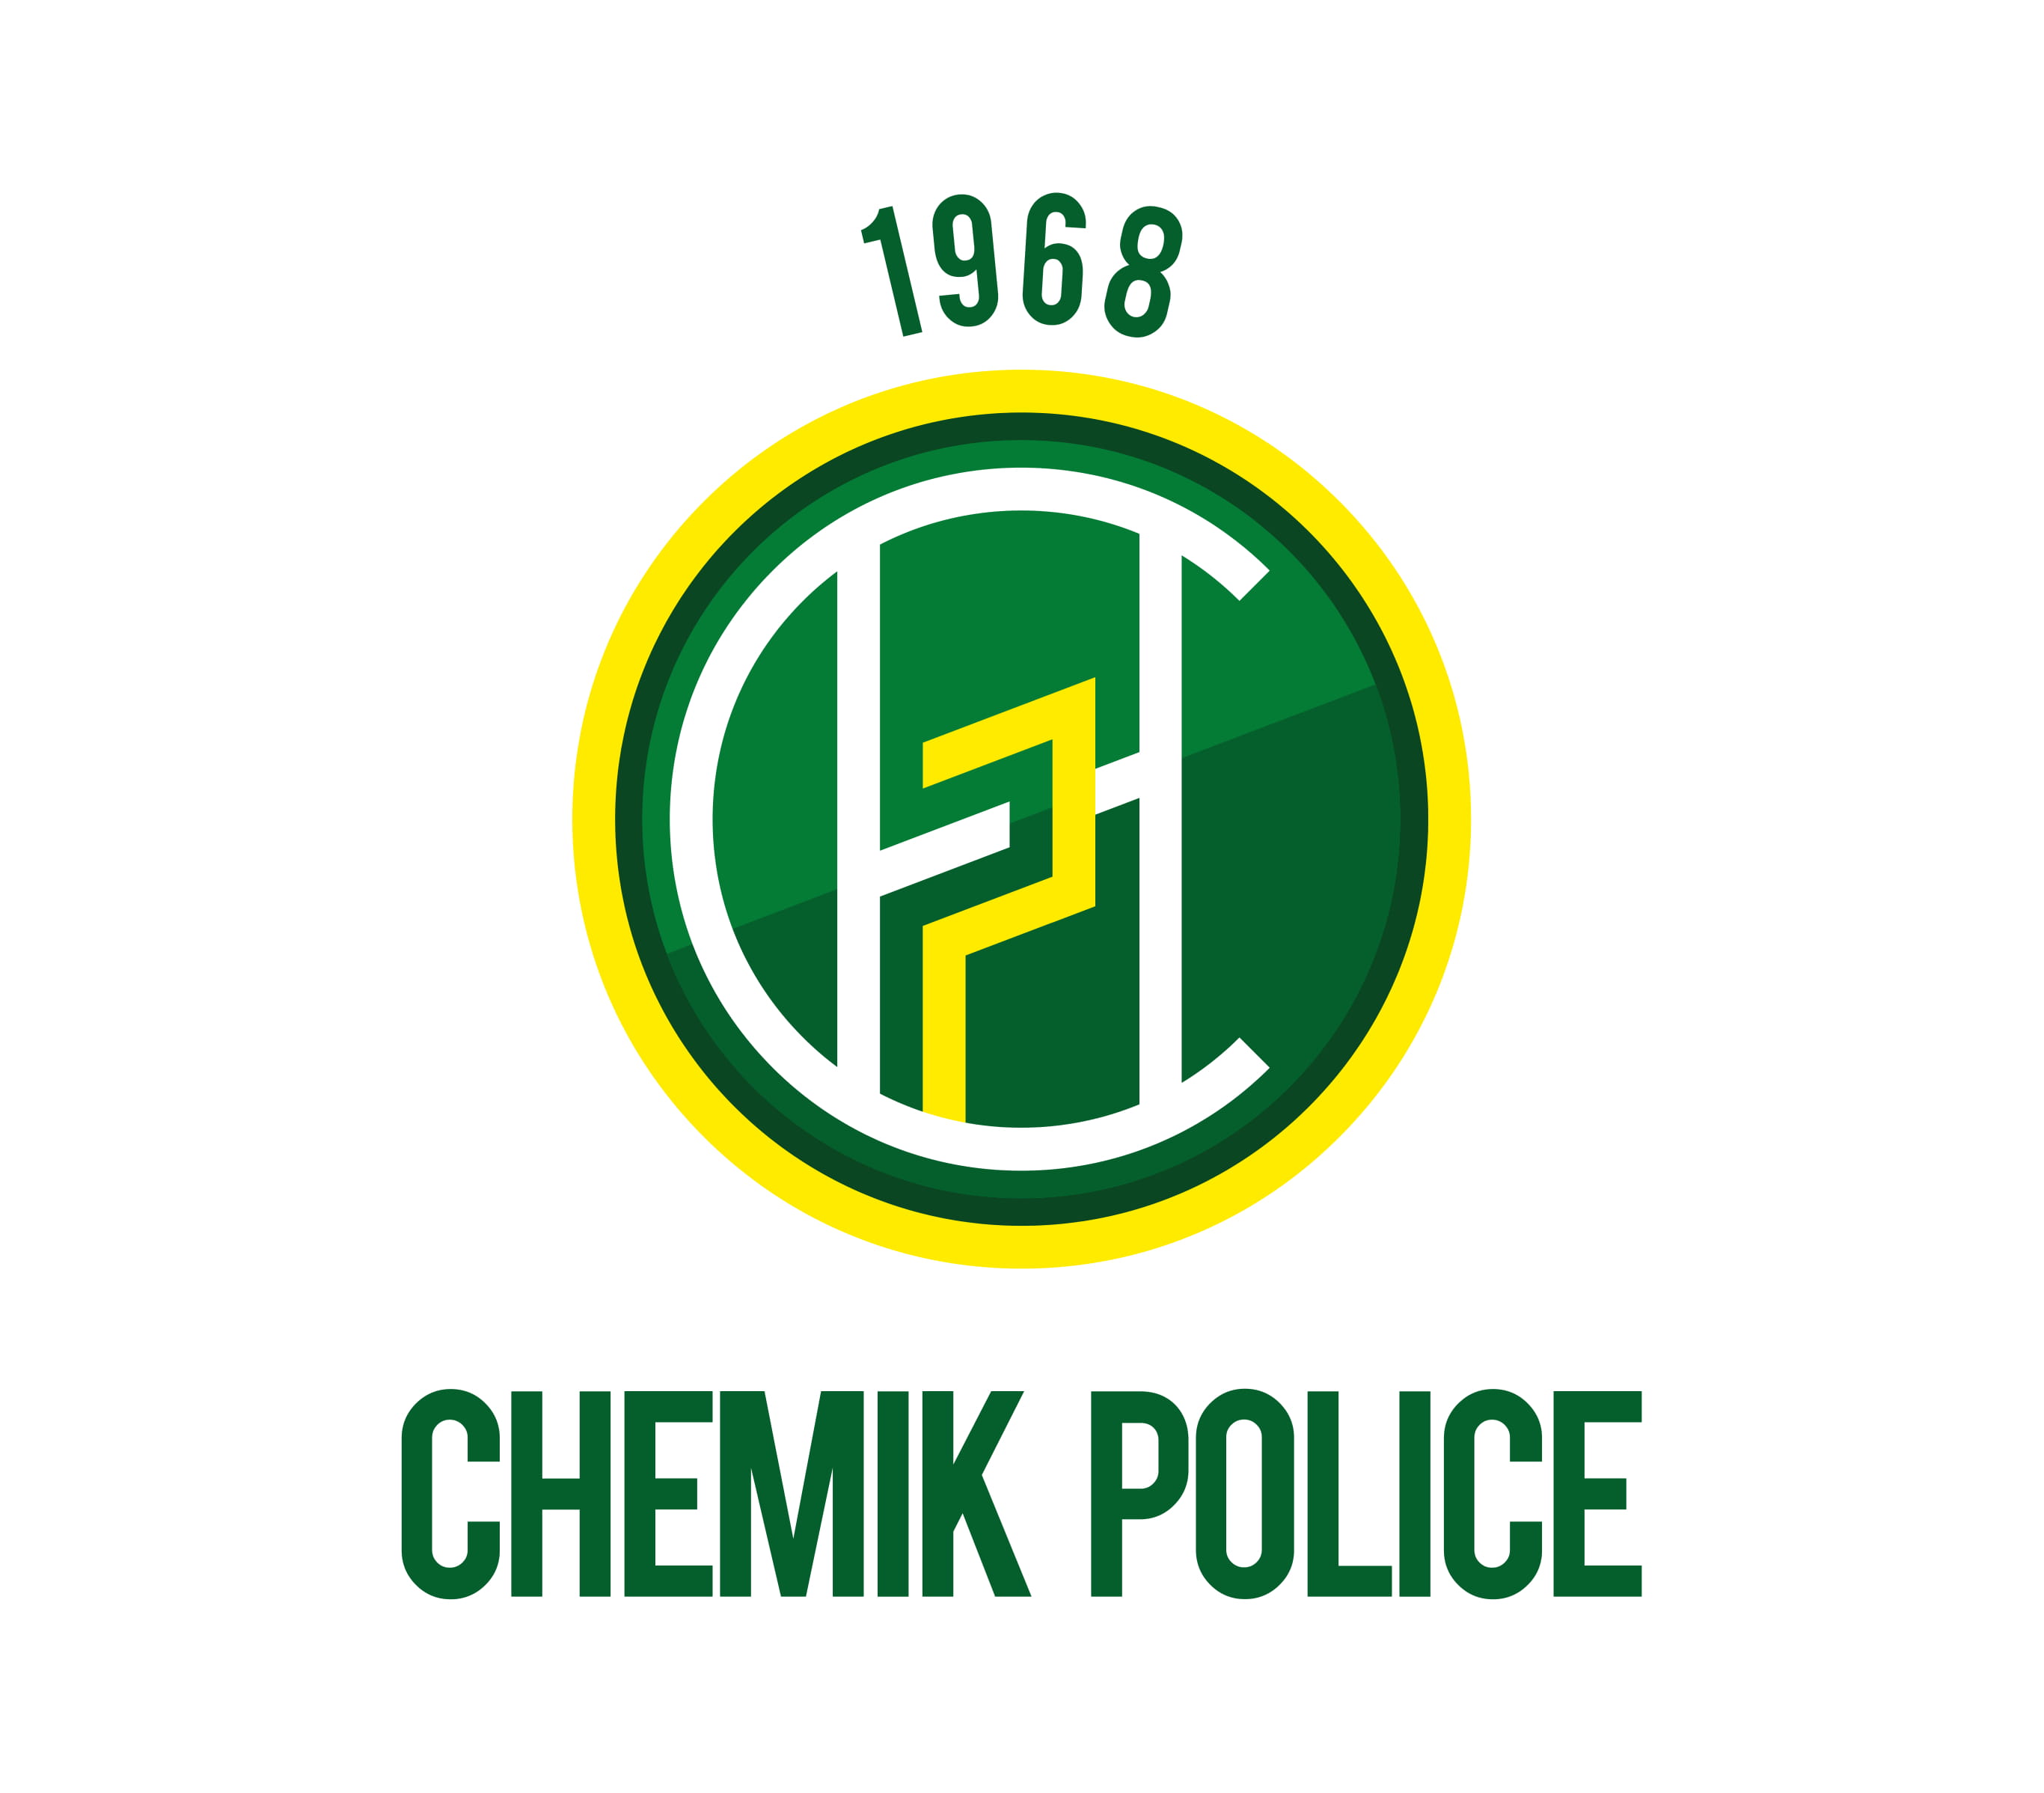 CHEMIK Police